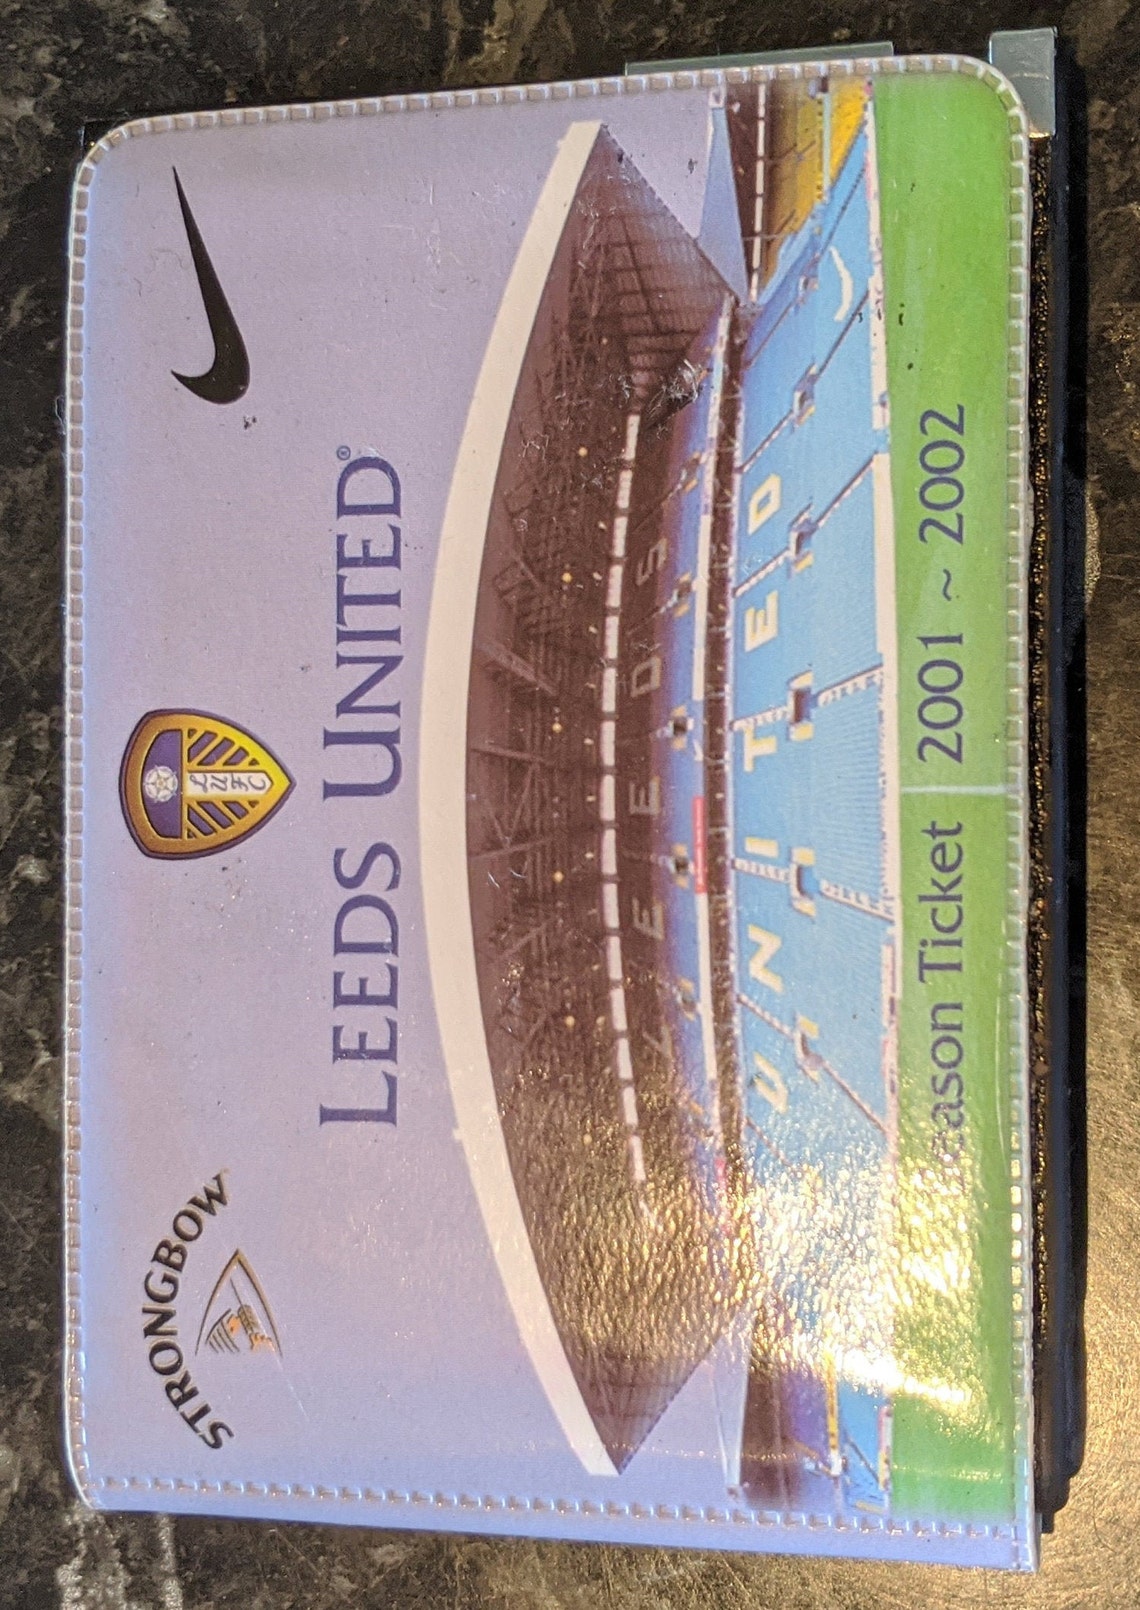 Leeds united 2001-02 season ticket - Etsy